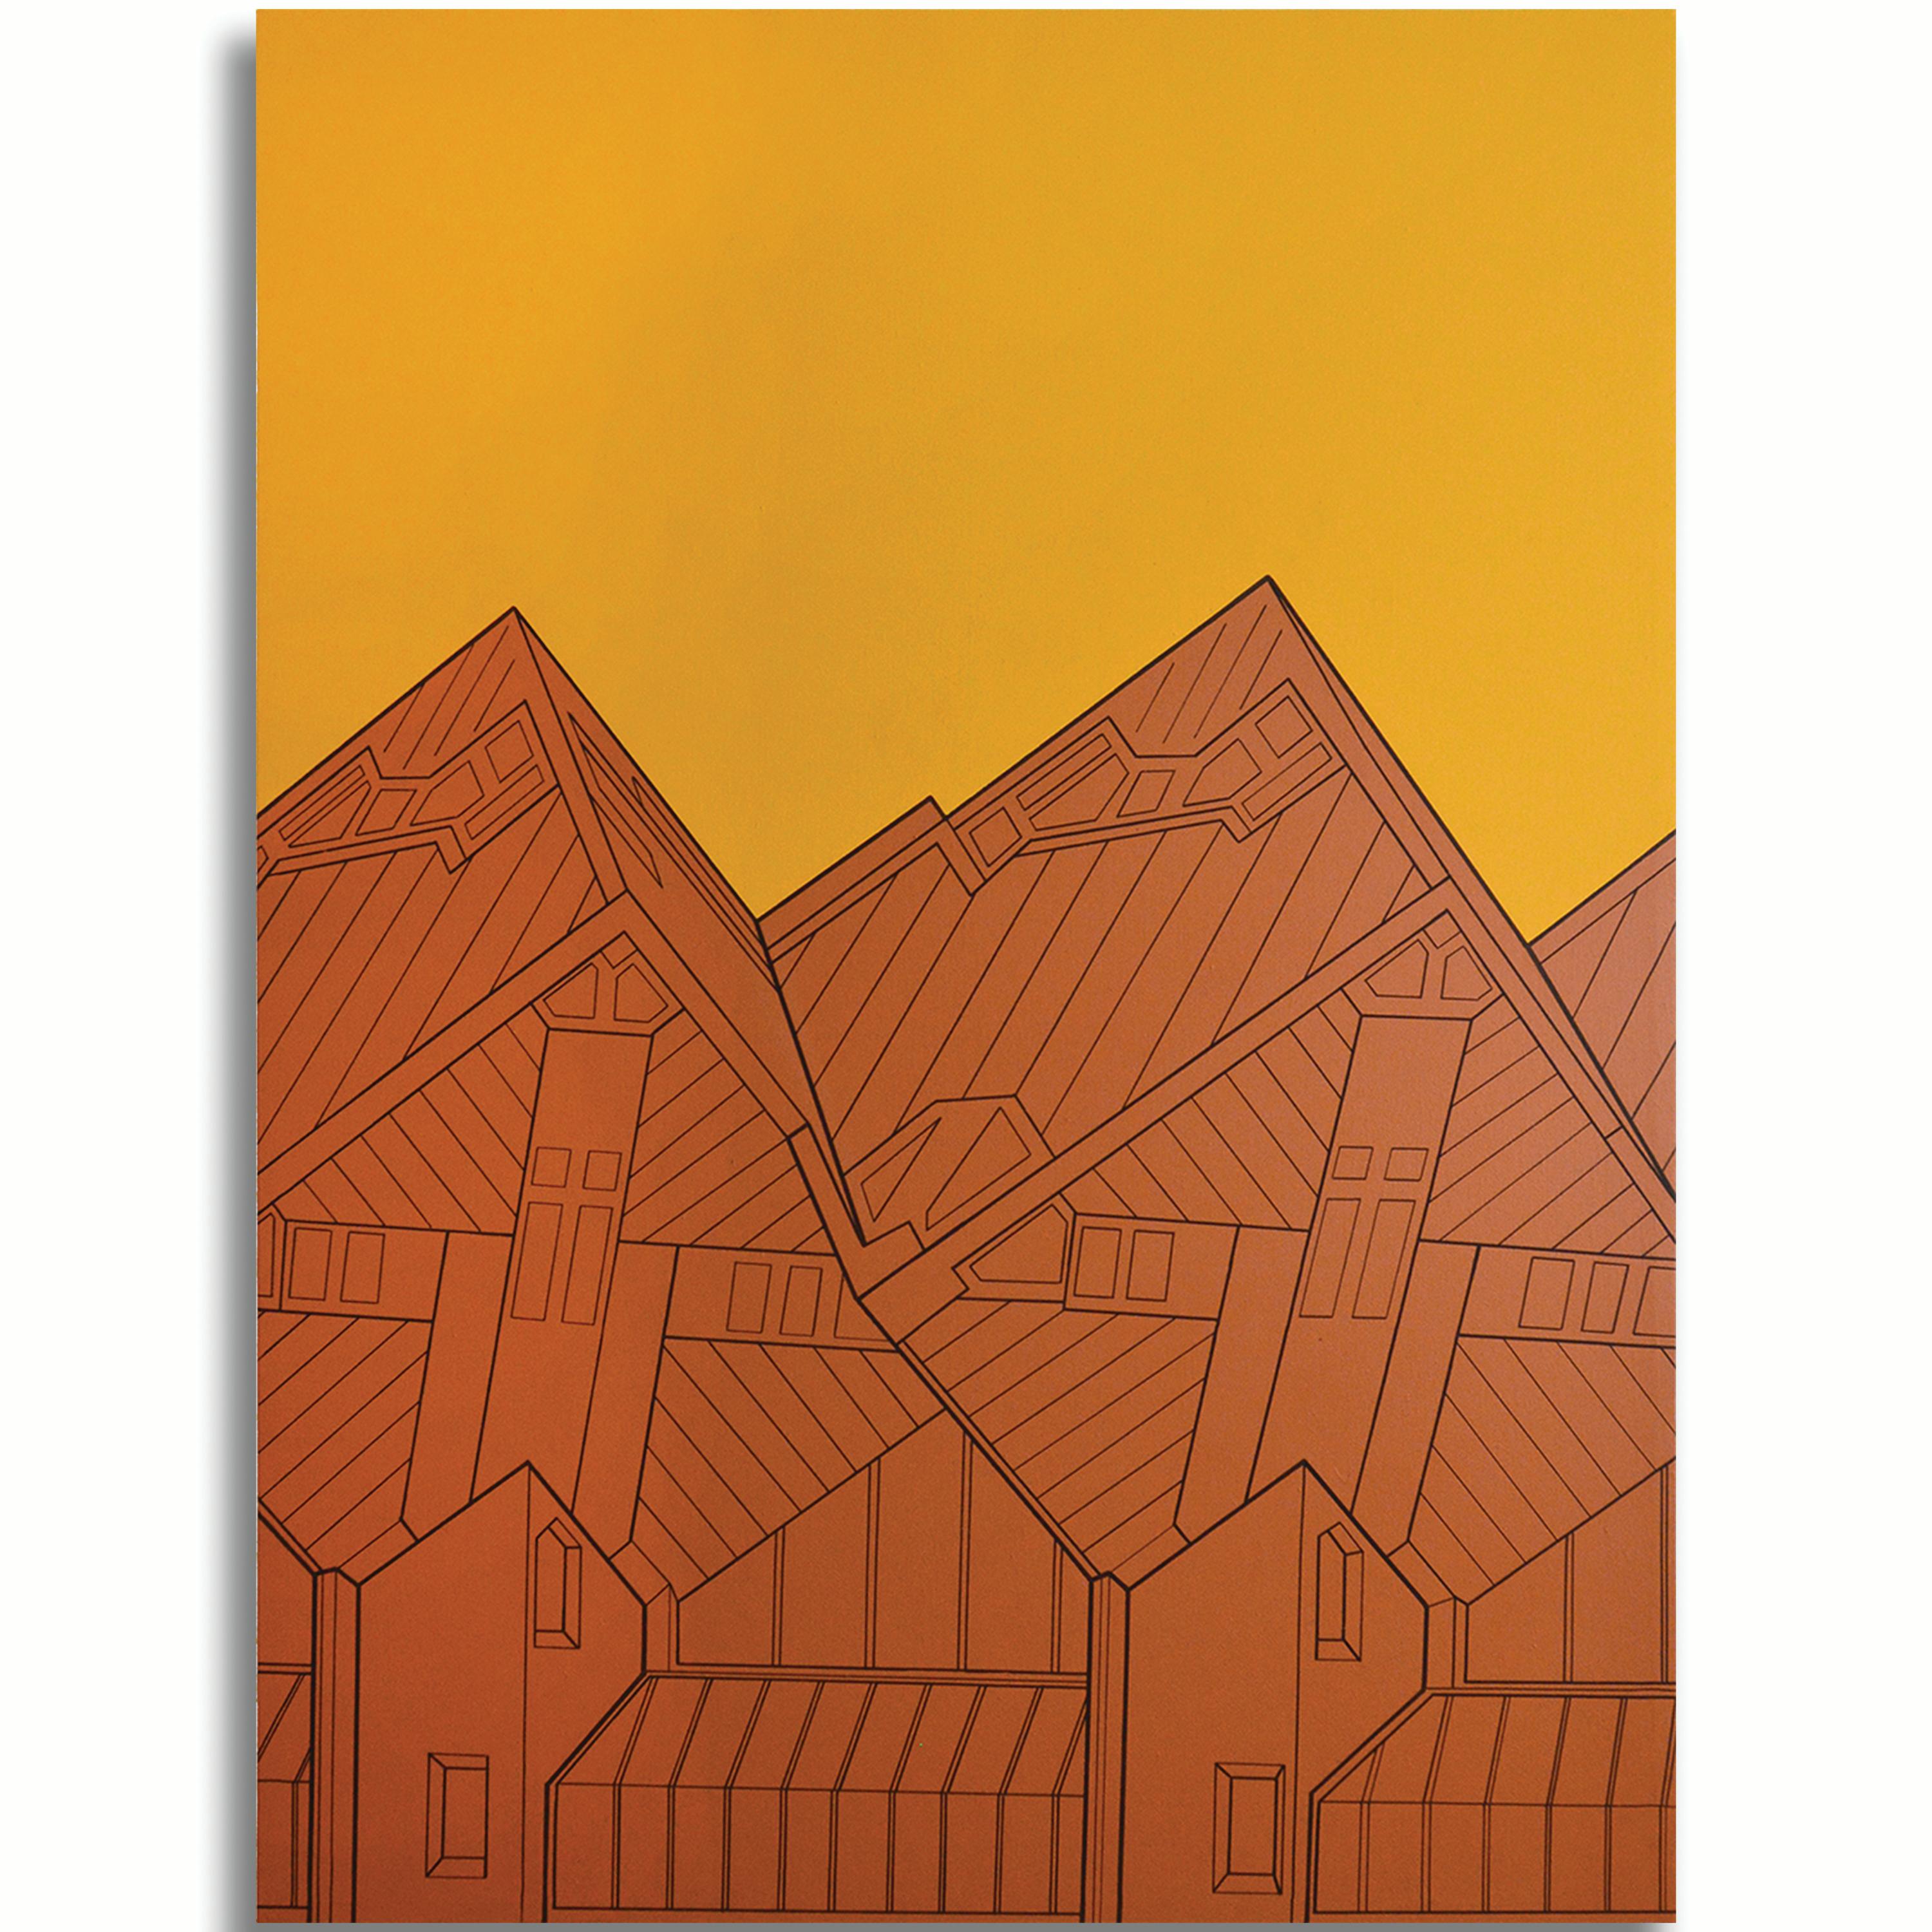 Kubuswoninge, 2019 - Orange Interior Painting by Heath West